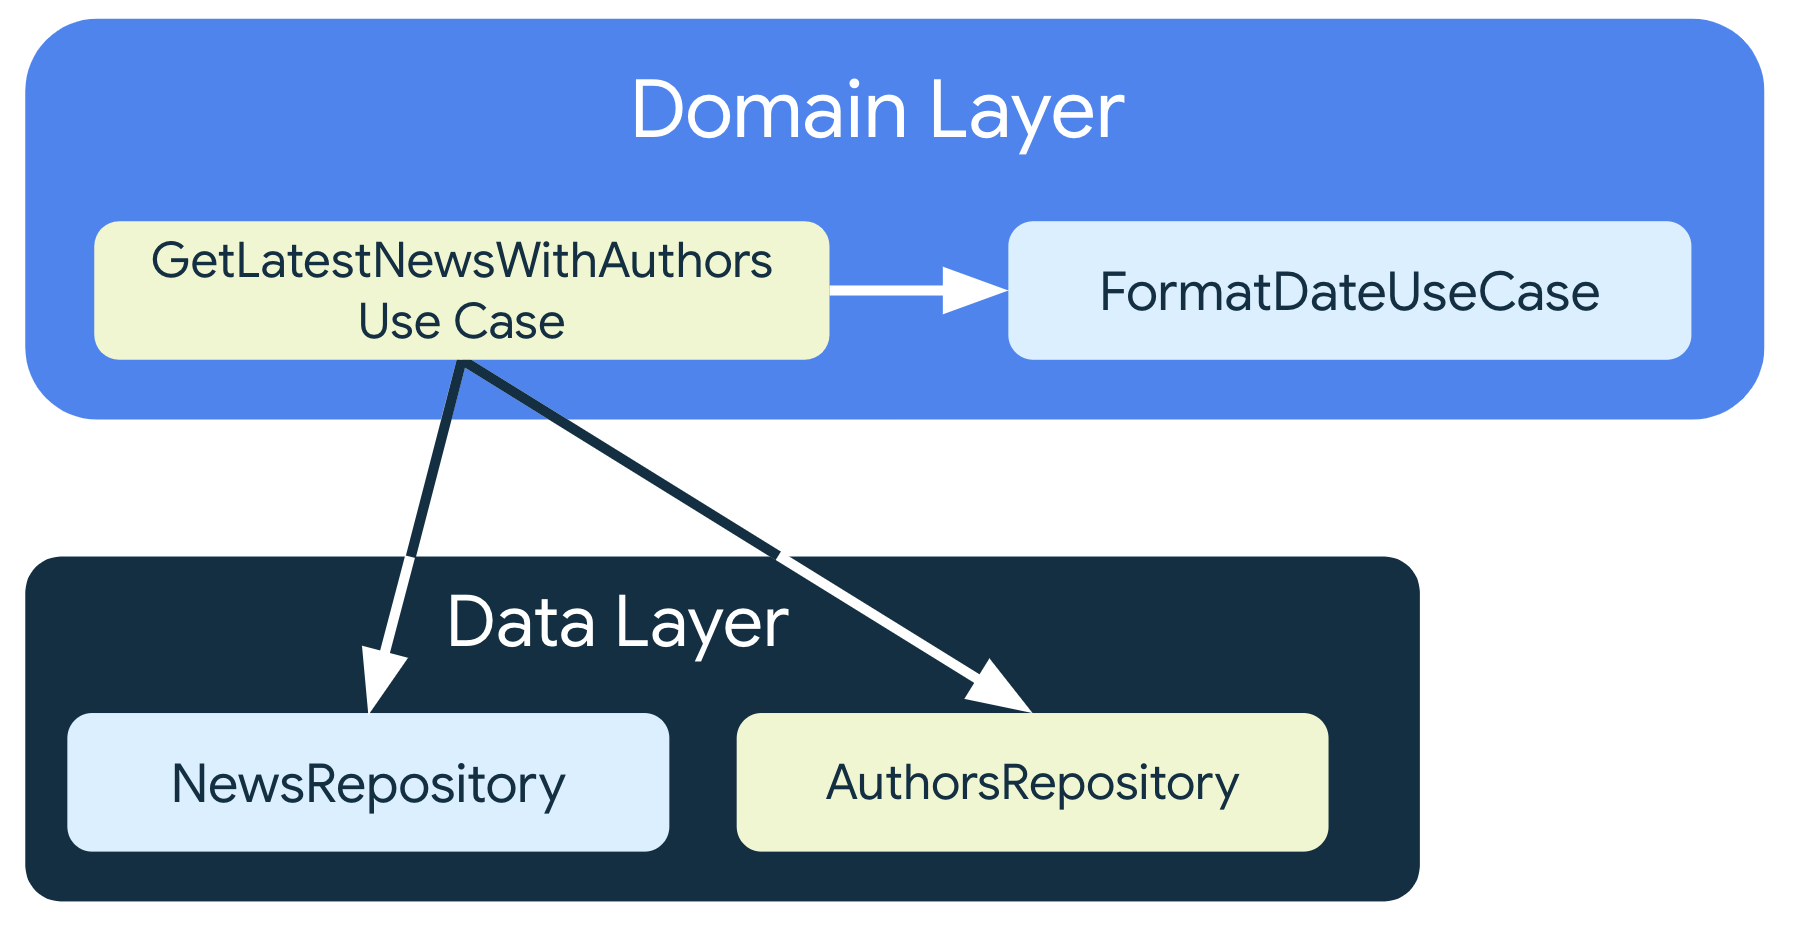 GetLatestNewsWithAuthorsUseCase depende de las clases de repositorio de la capa de datos, pero también depende de FormatDataUseCase, otra clase de caso de uso que también está en la capa de dominio.